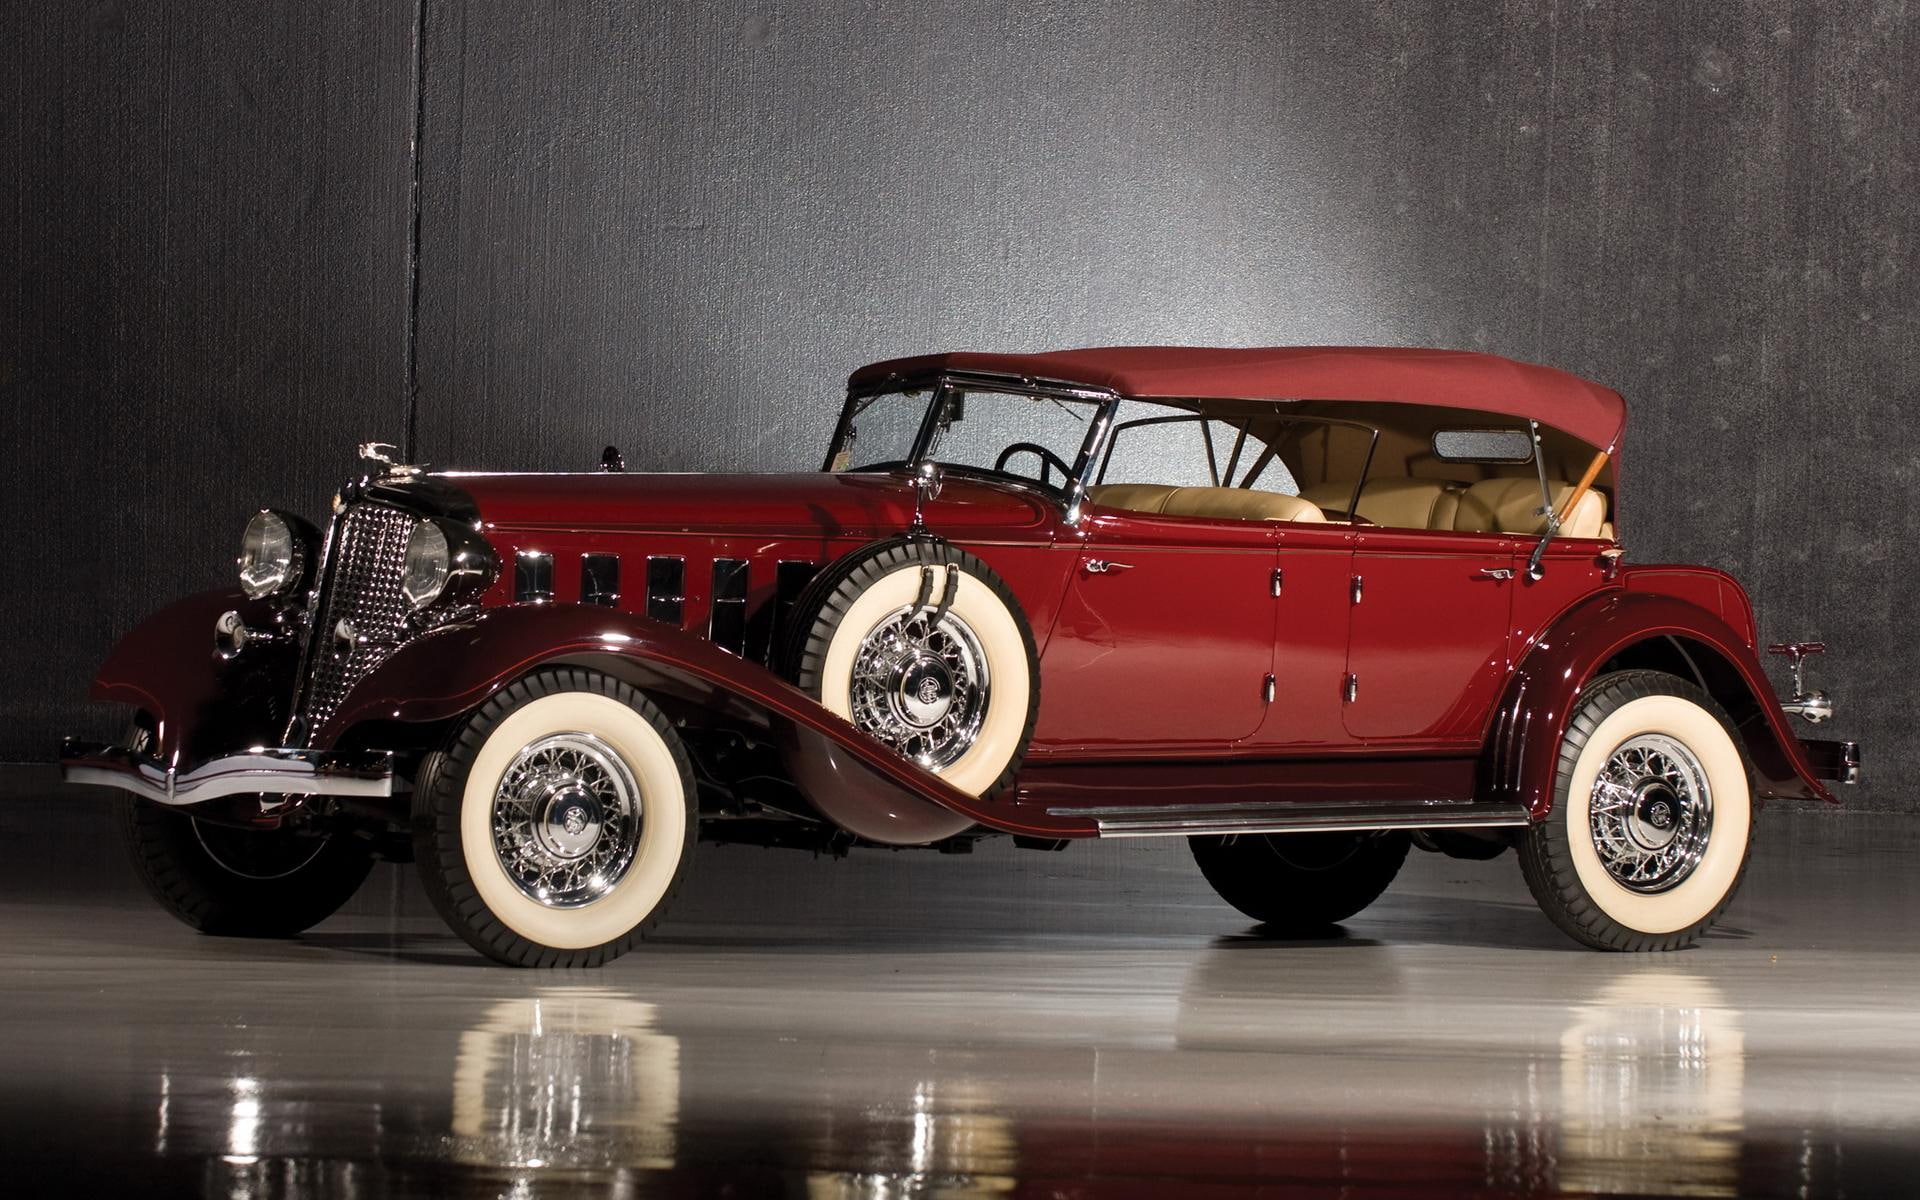 1933 Chrysler Imperial Sport Phaeton, red vintage luxury 4 door roadster